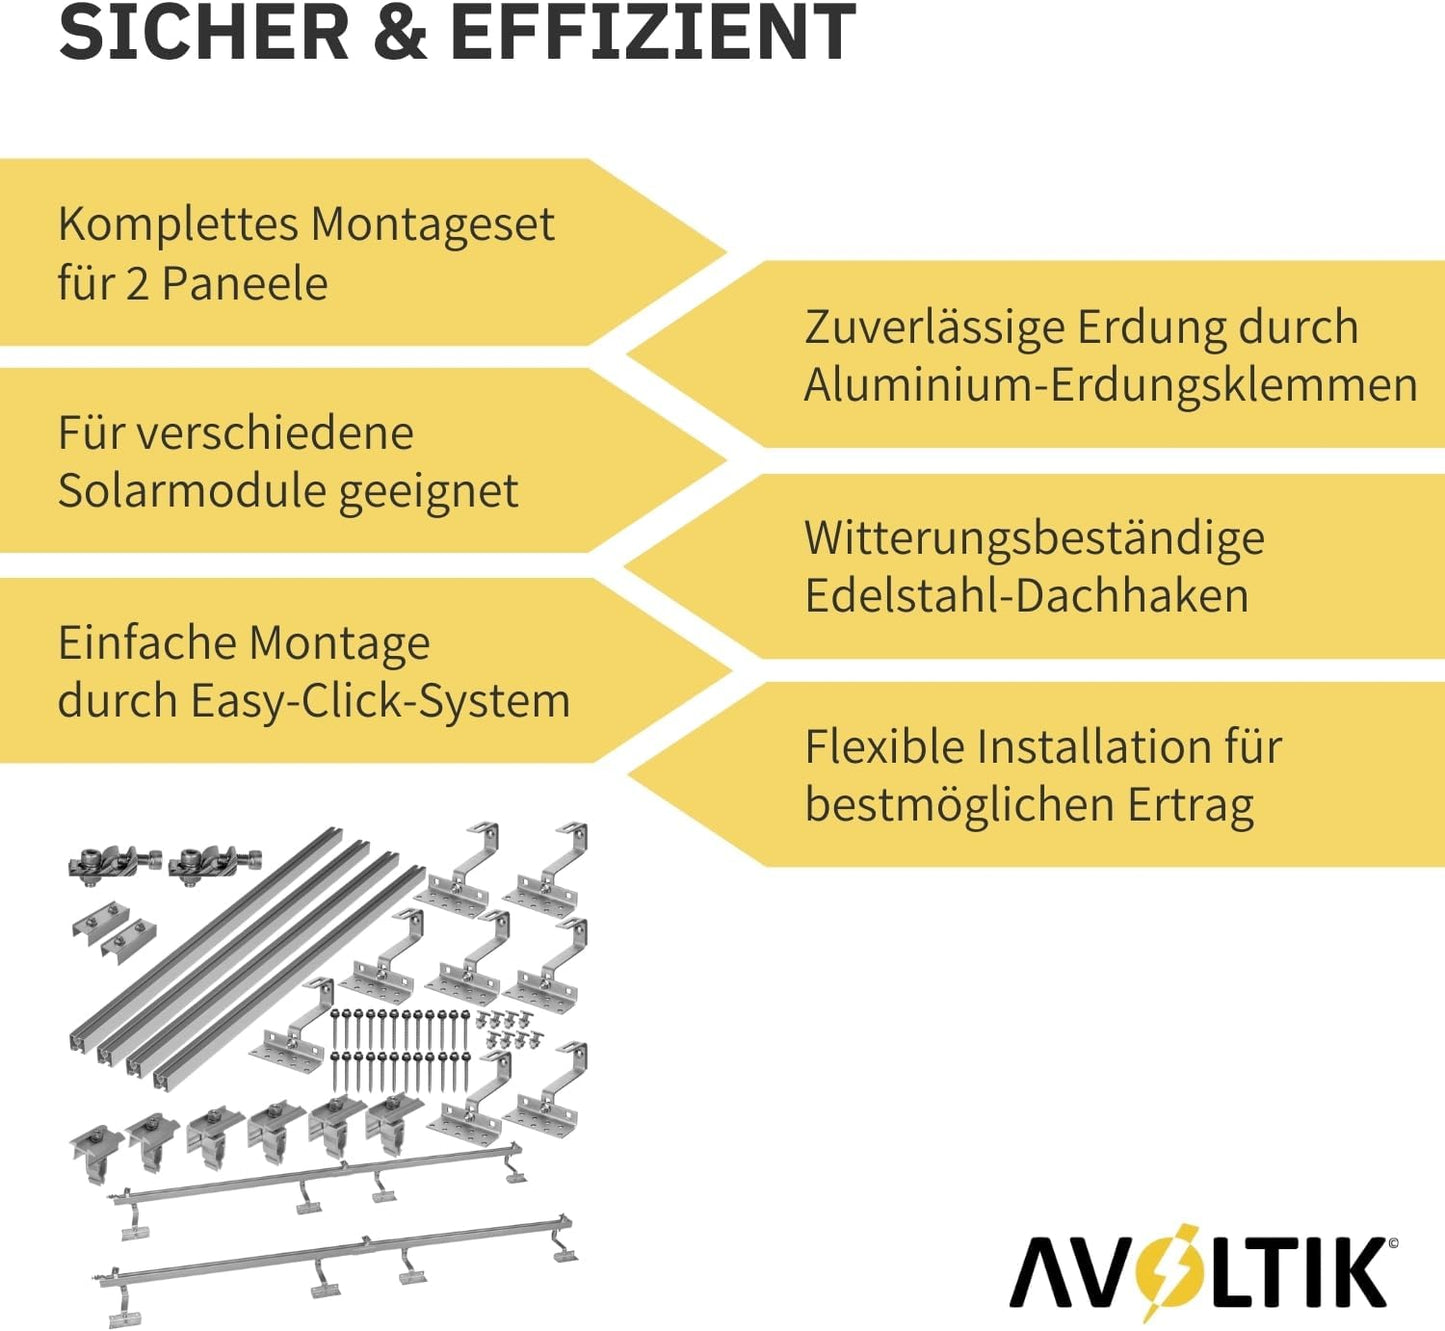 Avoltik Solar Halterung Ziegeldach Montageset für 2 Paneele 30-45mm Sicher & Effizient